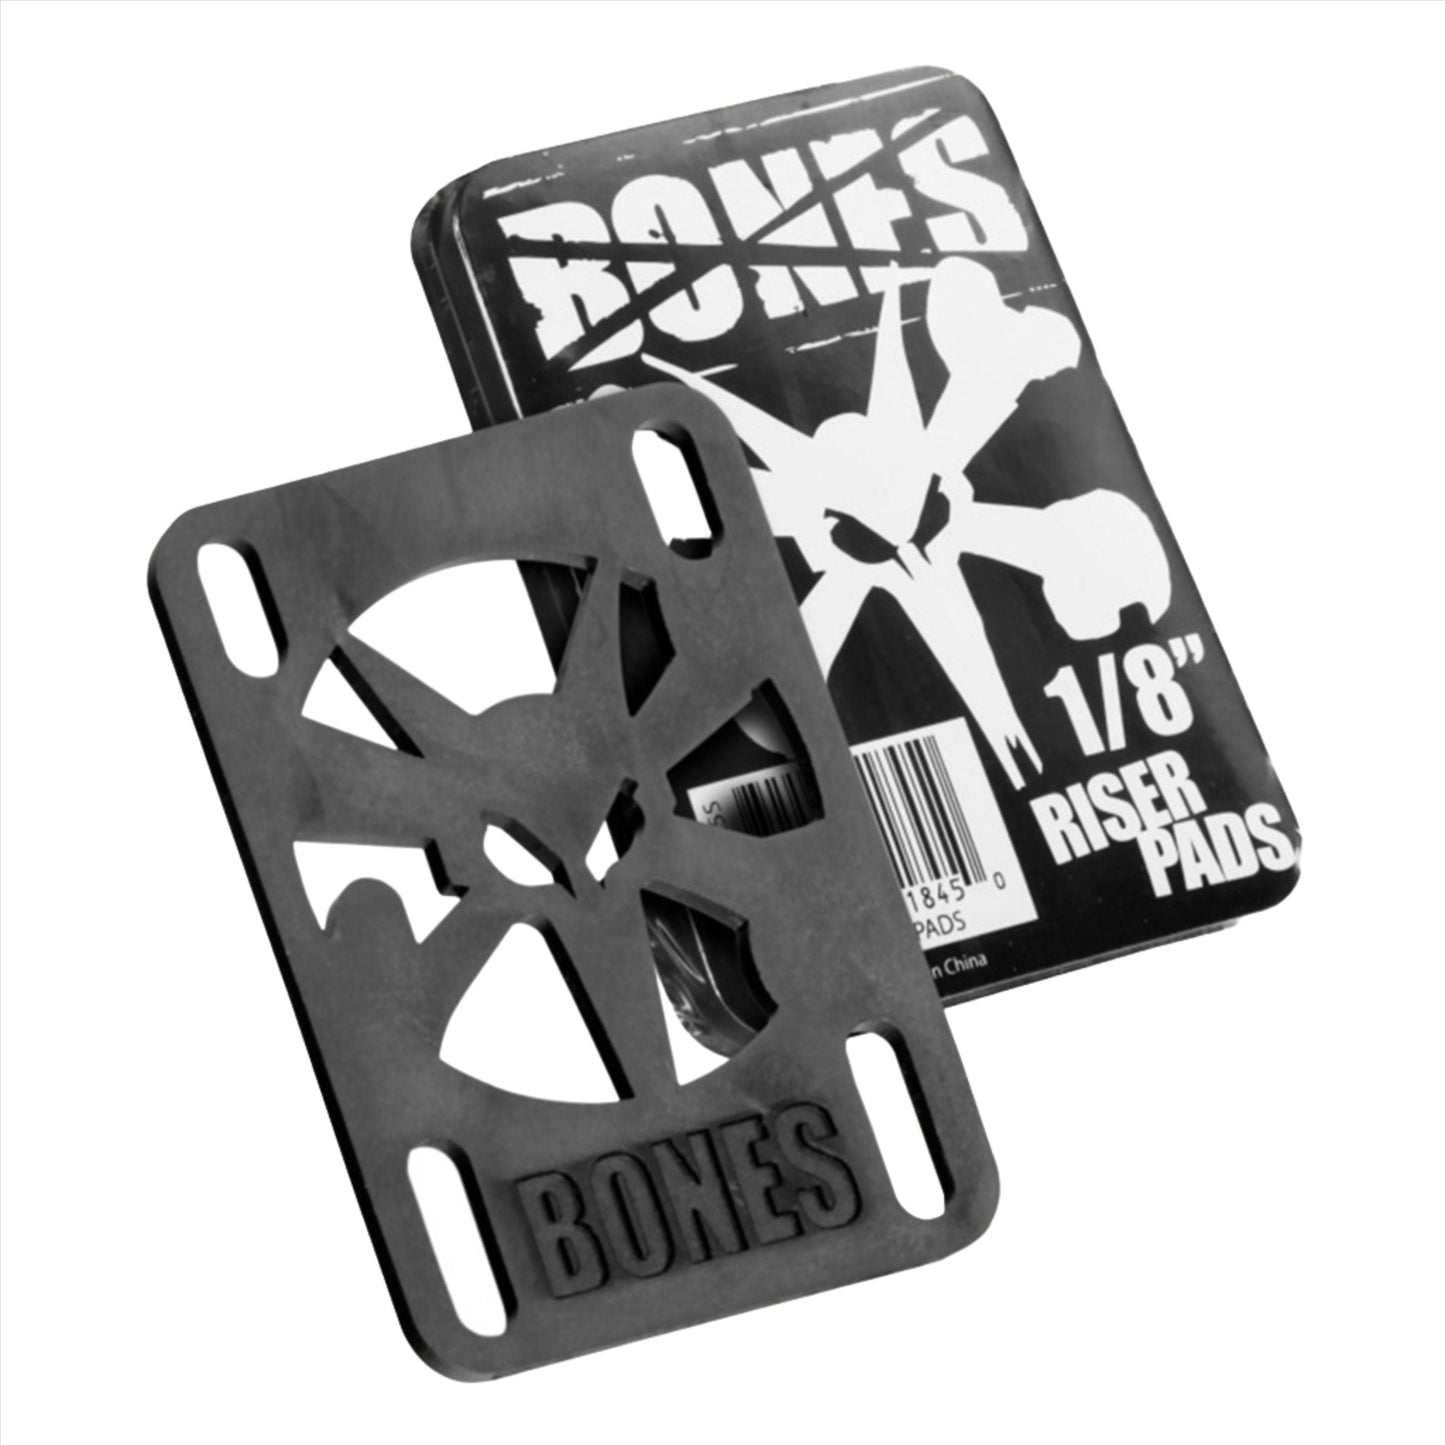 Bones Riser Pads 1/8"